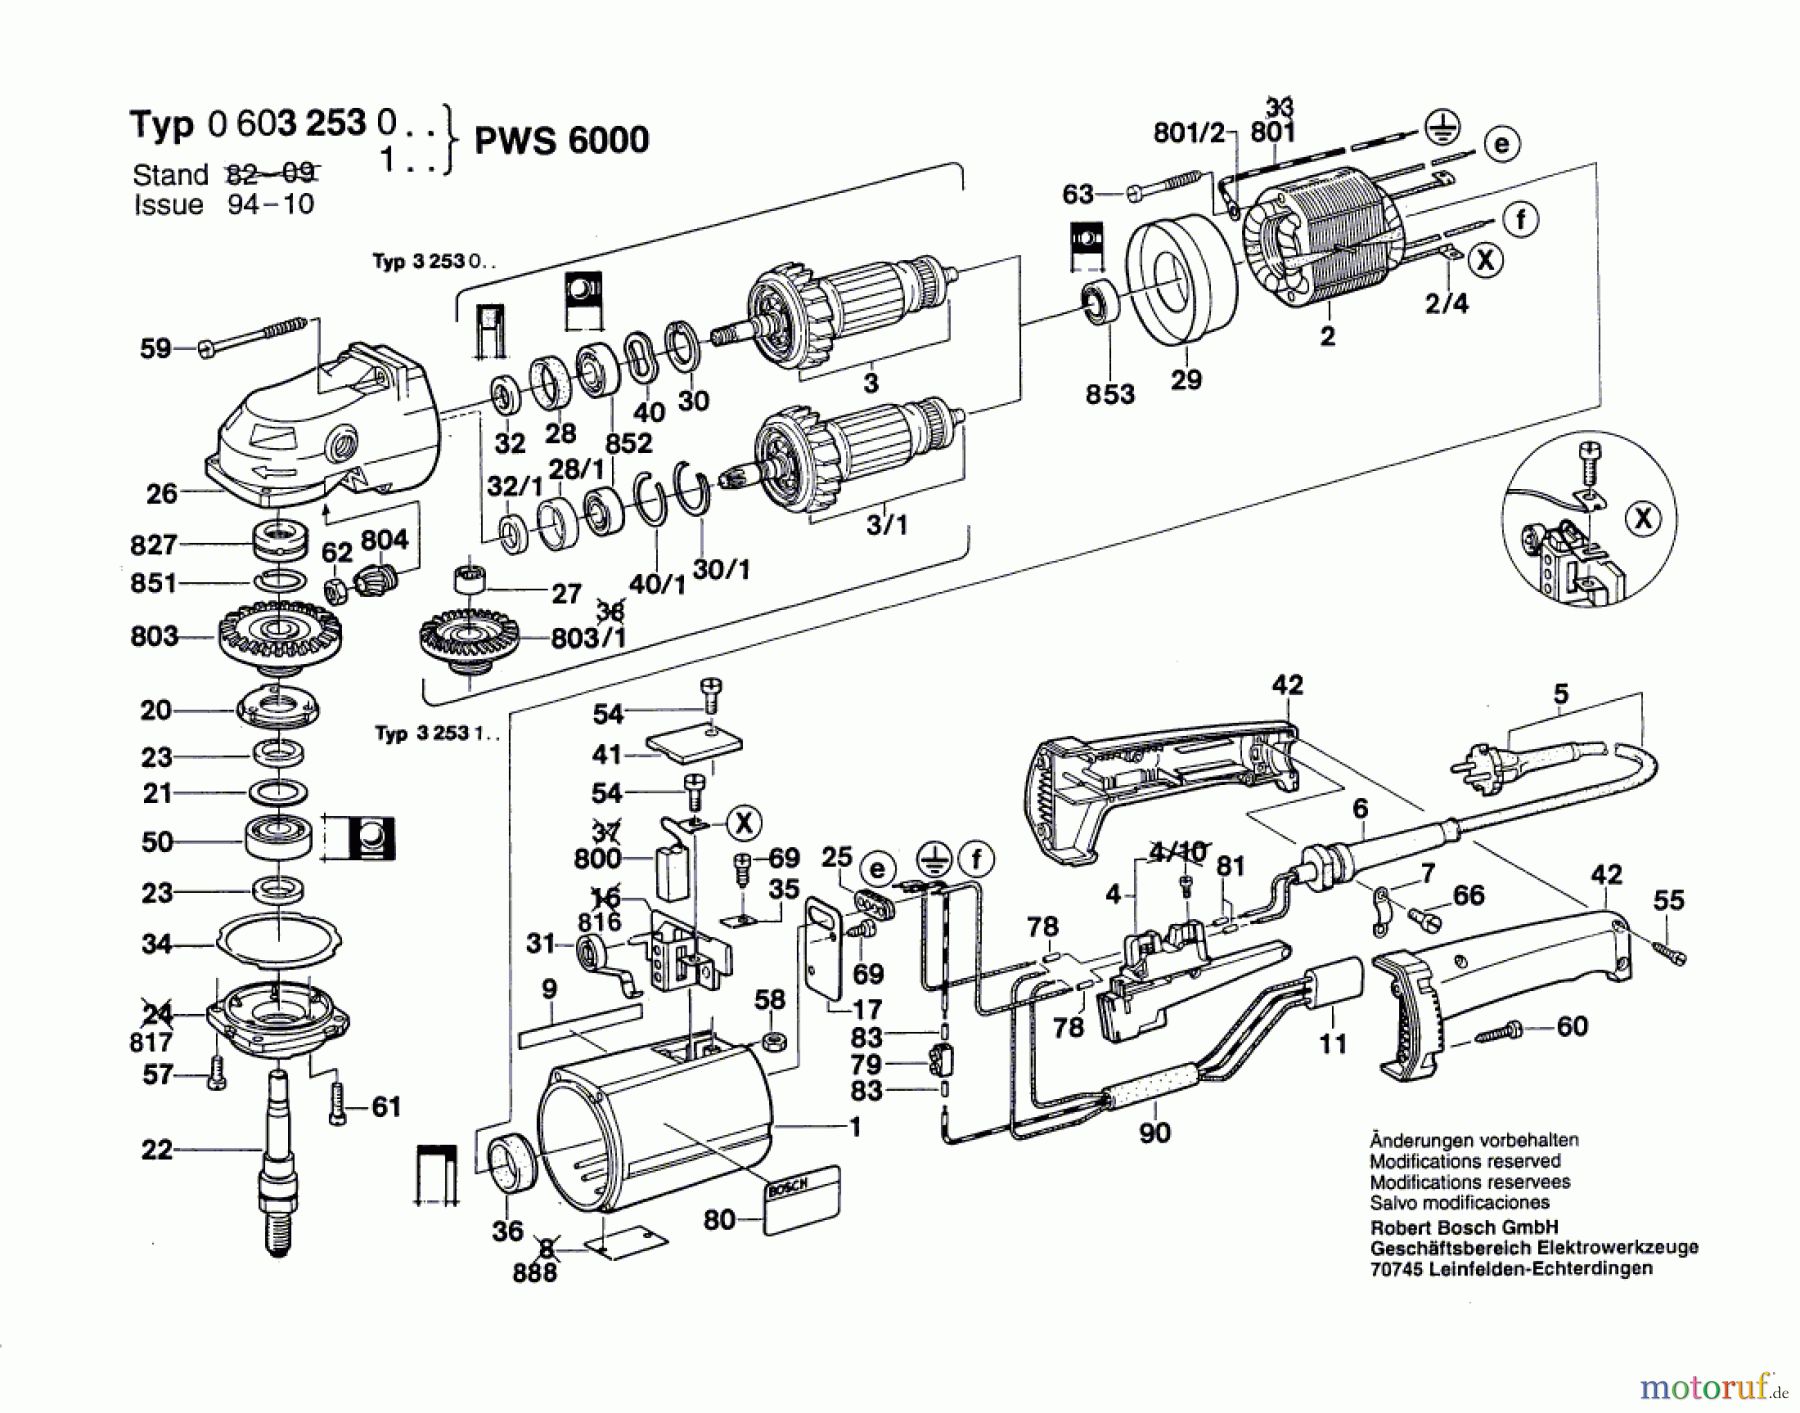  Bosch Werkzeug Winkelschleifer PWS 6000 Seite 1